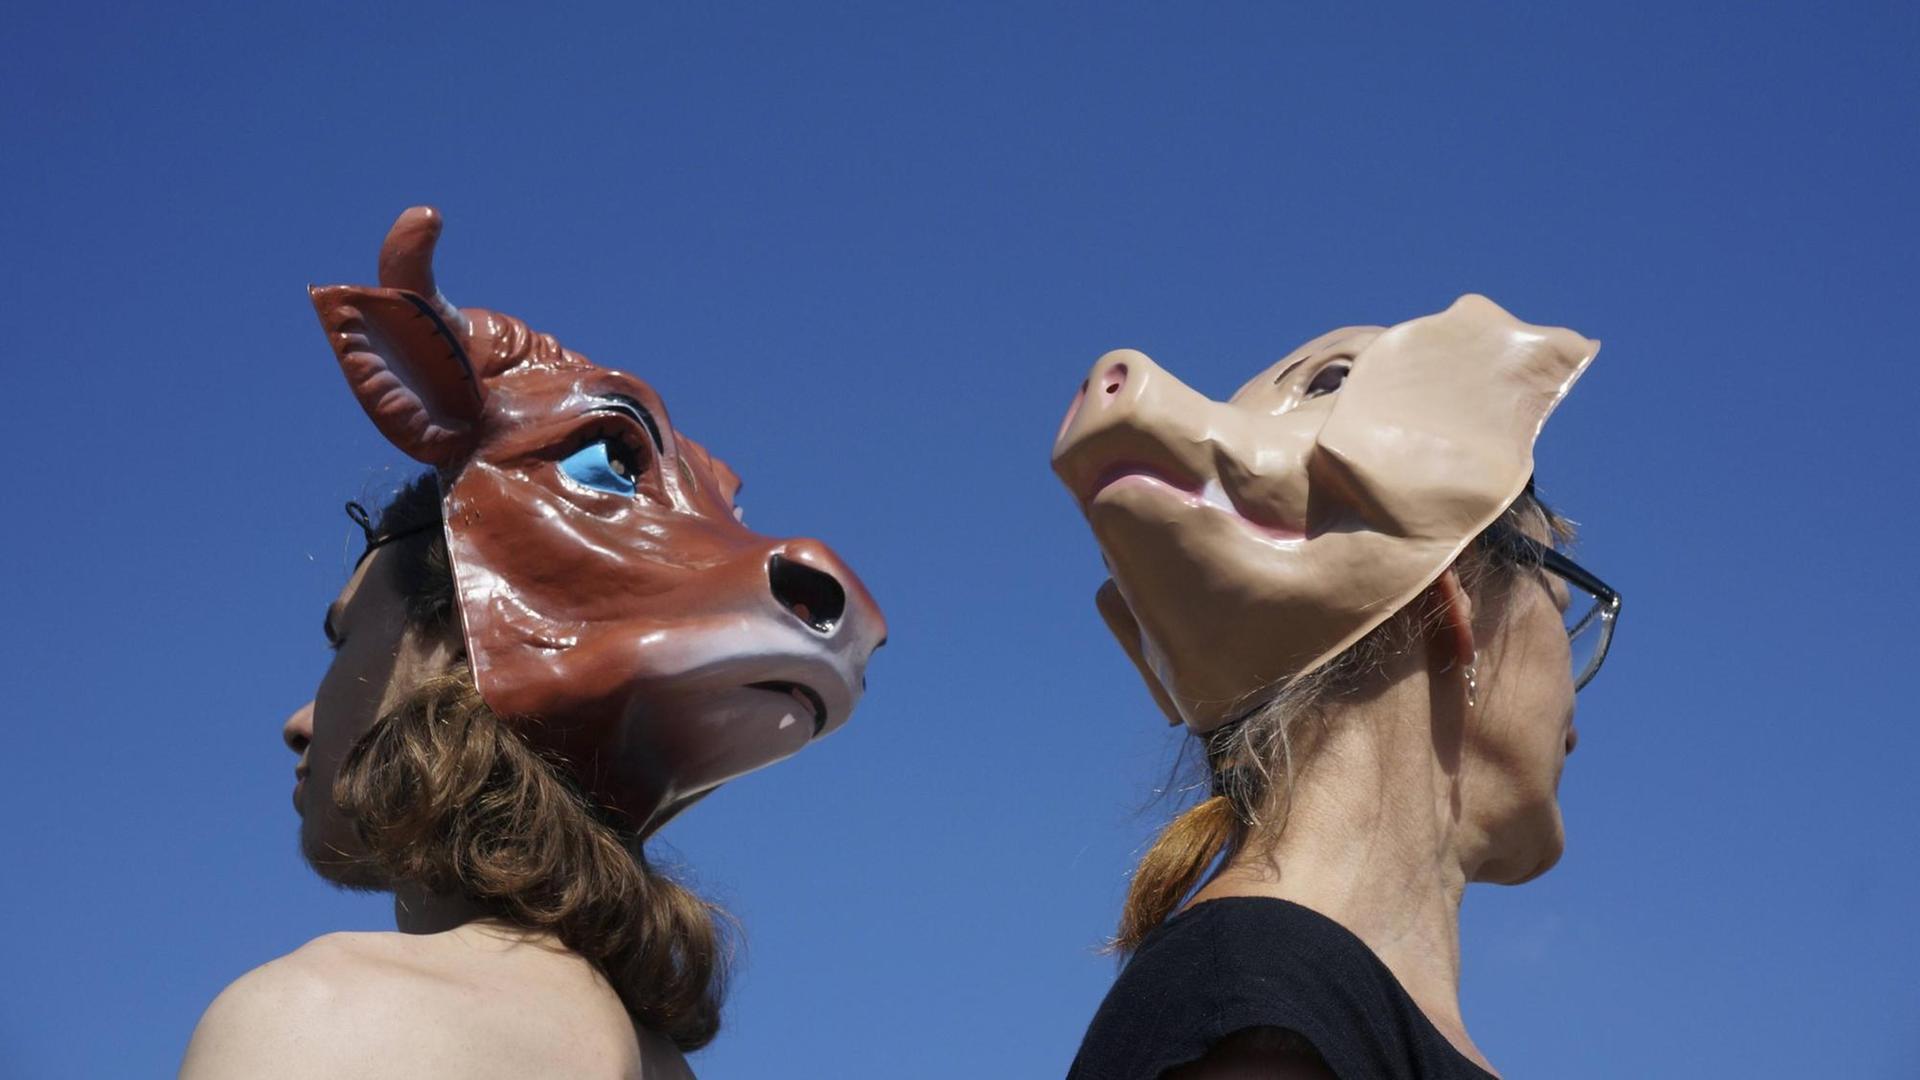 Teilnehmer der Veganer-Demonstration tragen am Hinterkopf Tiermasken.